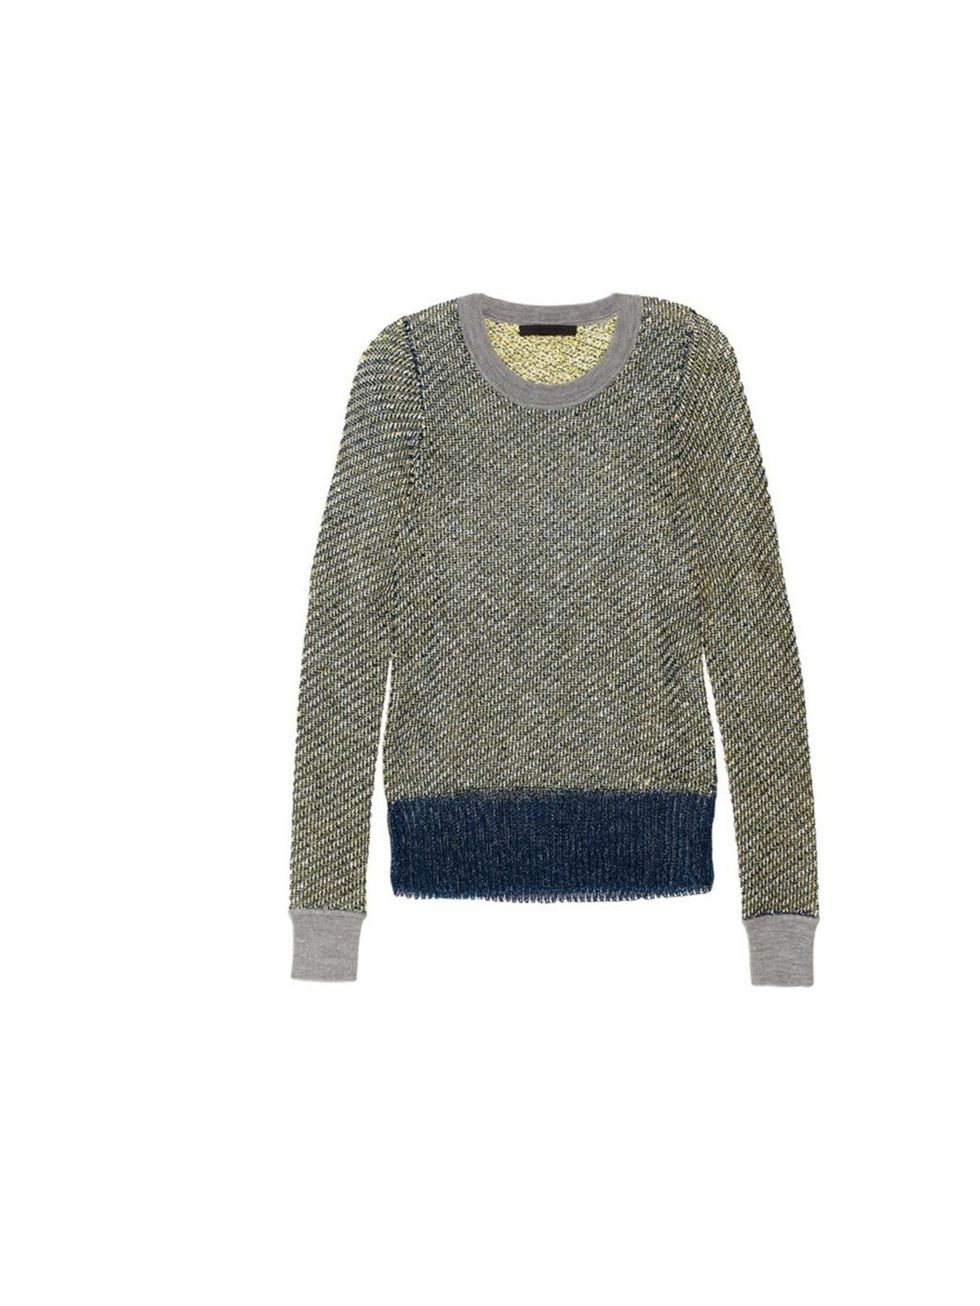 <p>Alexander Wang mesh sweater, £495, at Net-a-Porter</p>